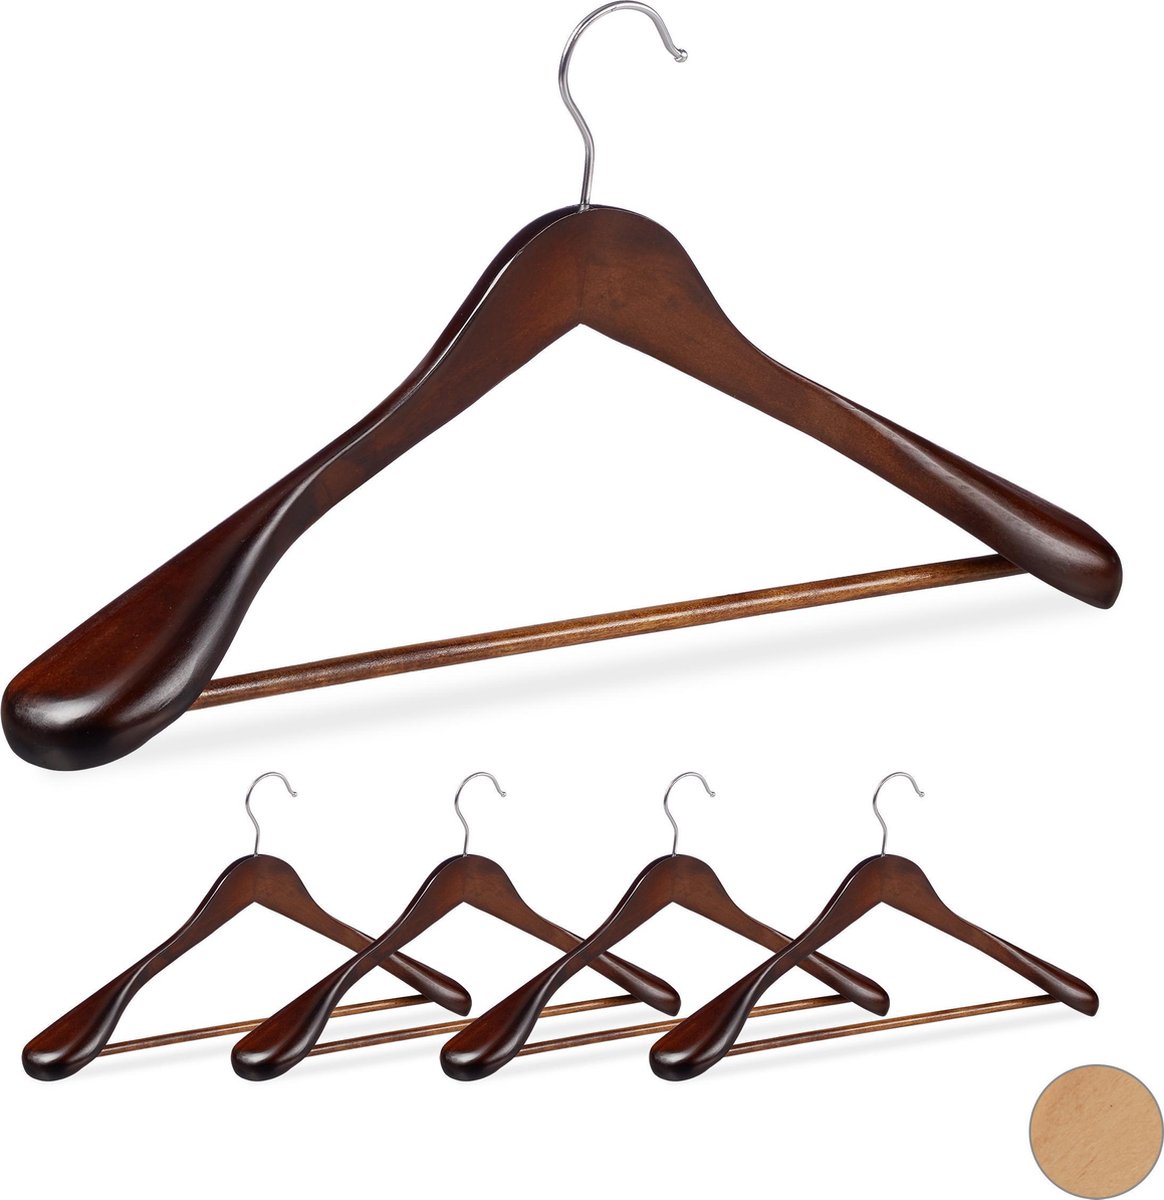 Relaxdays kledinghangers set - 5 stuks - voor pakken - brede schouder - kleerhangers hout - bruin - Relaxdays